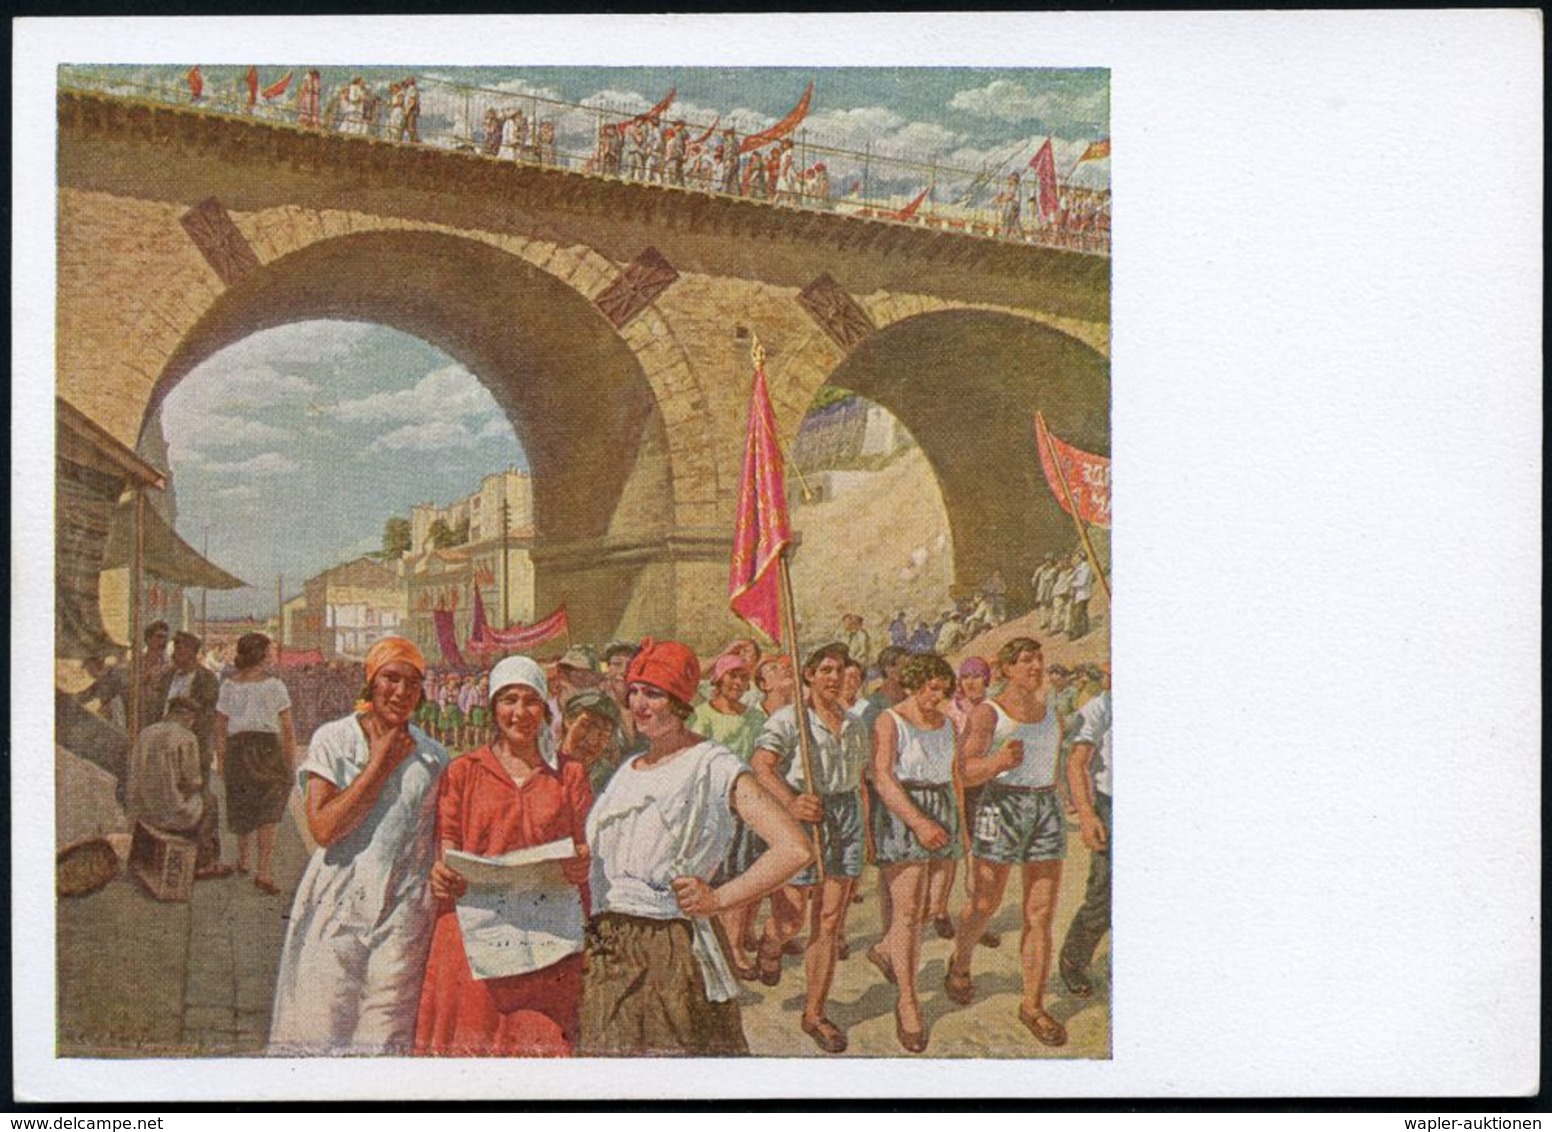 BRÜCKEN : UdSSR 1929 5 Kop BiP Soldat, Rotbraun "Revolutions-Museum": 1. Mai In Odessa = Bahn-Viadukt = Gemälde V. S.Lup - Brücken